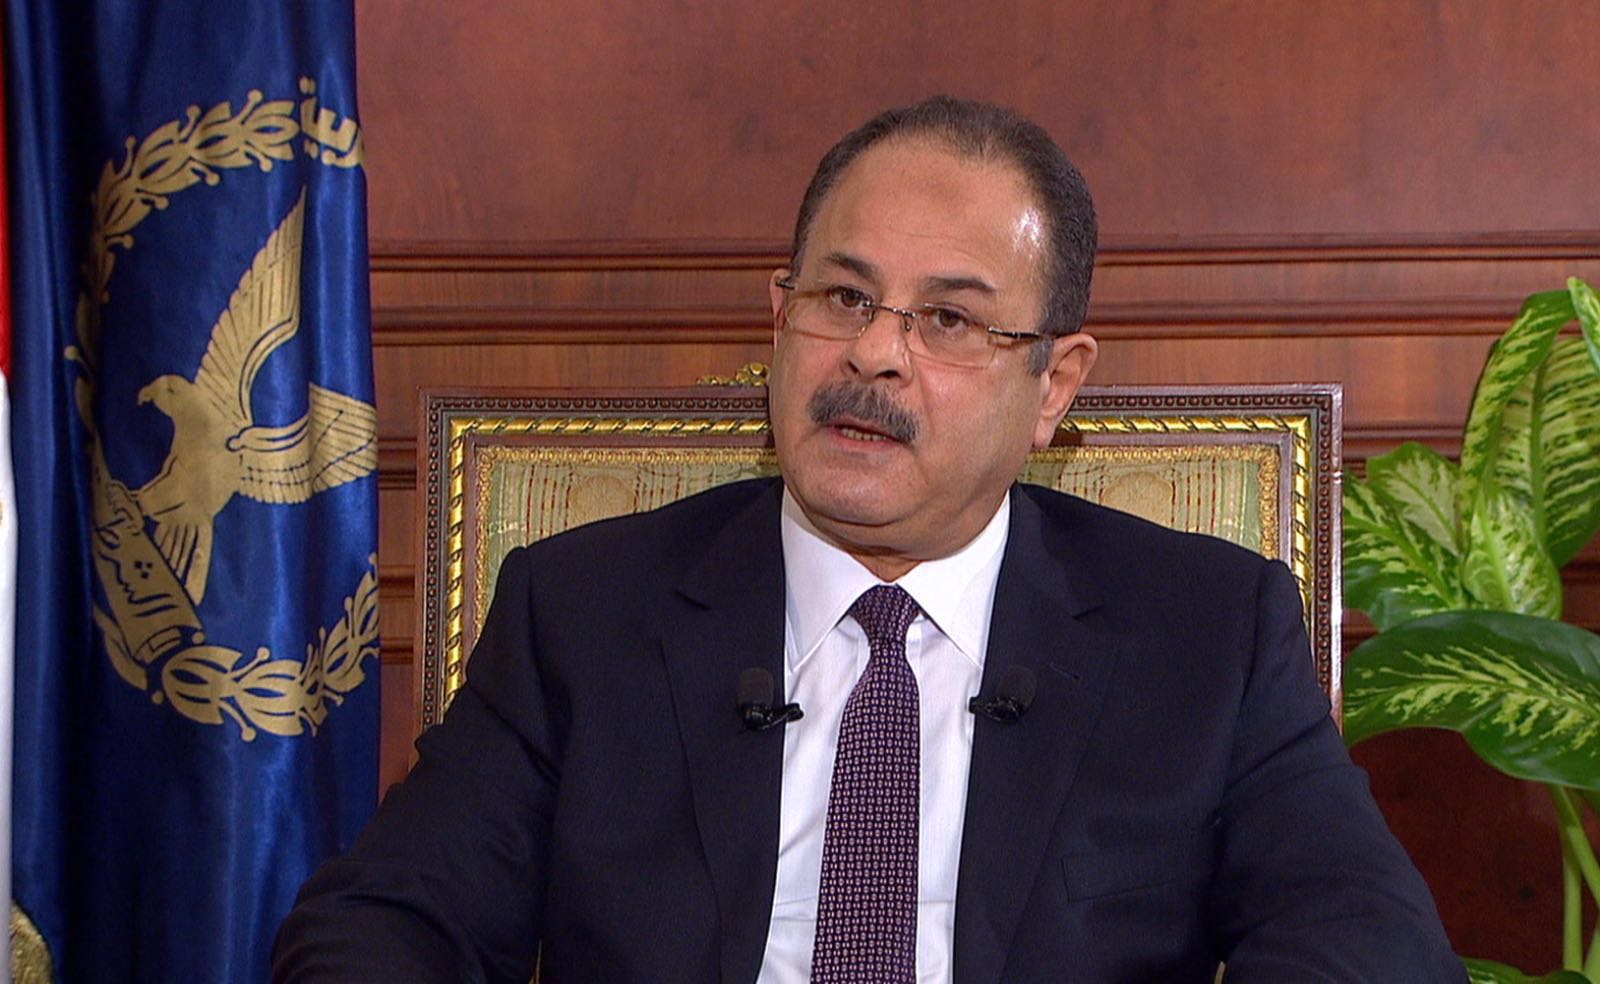   وزير الداخلية لمساعديه: "حلوا أزمة المرور وإلا"